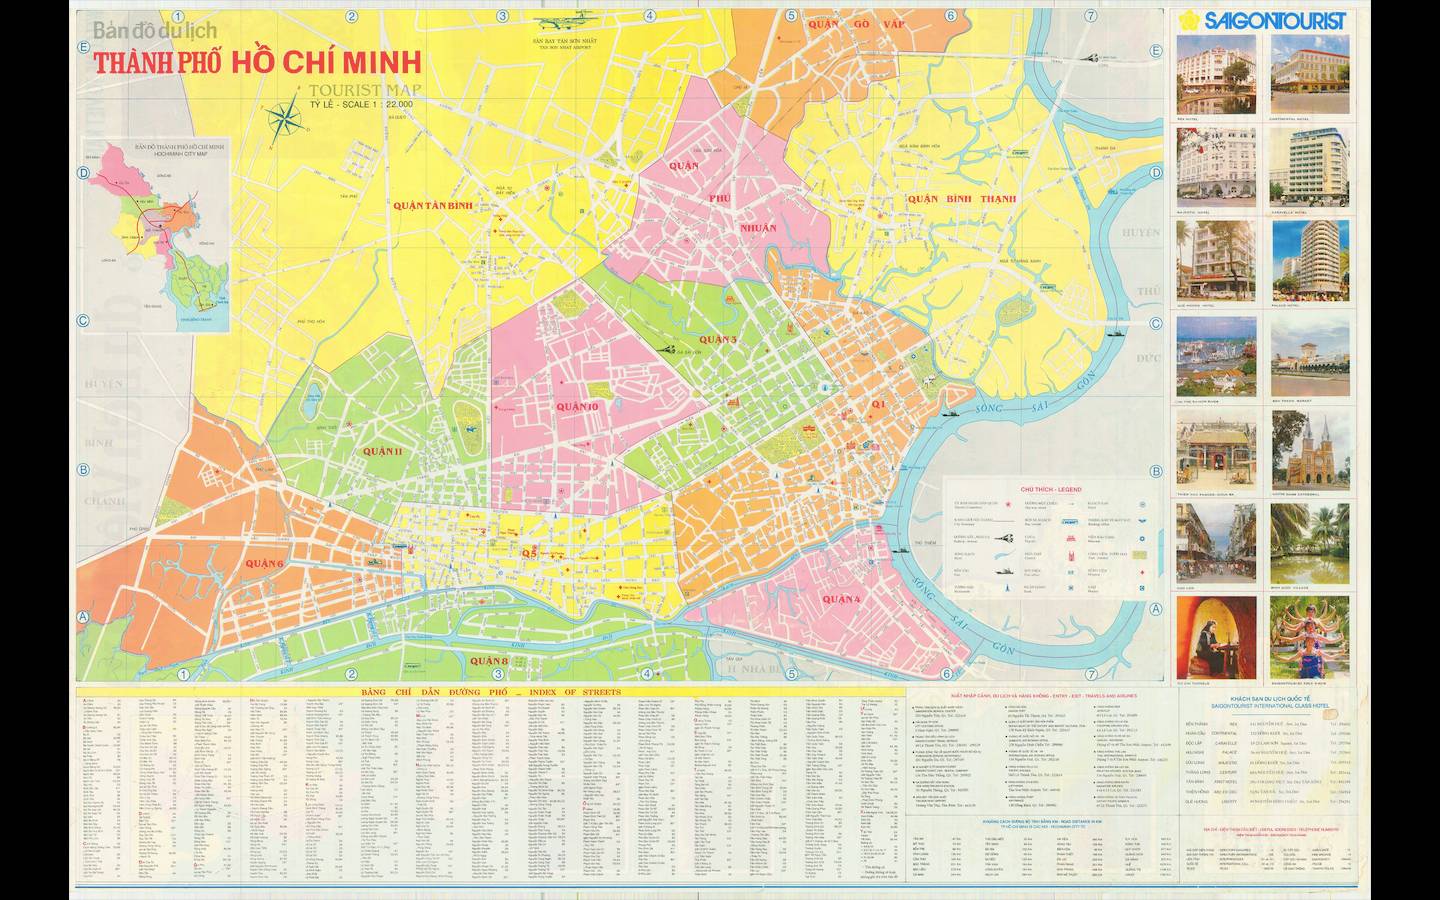 Bản đồ TPHCM 2024 giúp bạn dễ dàng di chuyển và tìm kiếm địa điểm tại thành phố sôi động này. Bạn sẽ được cập nhật những thay đổi mới nhất và dễ dàng lên kế hoạch cho cuộc hẹn cuối tuần hay chuyến đi đến các quận mới của TPHCM.